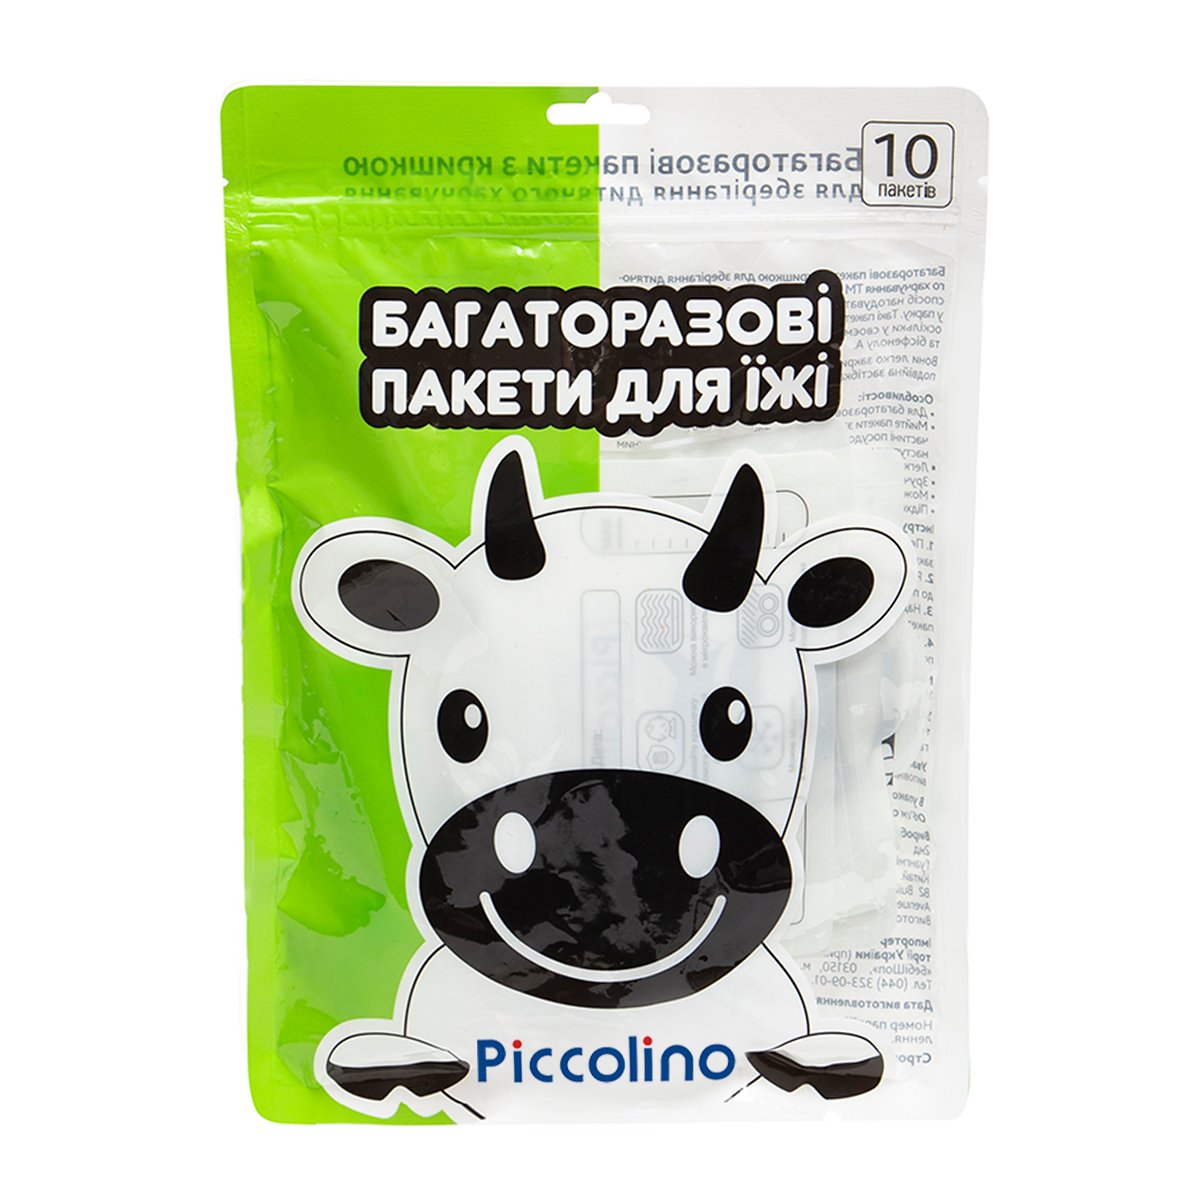 Багаторазові пакети Piccolino для дитячого харчування, 10 шт. (11777.01) - фото 1